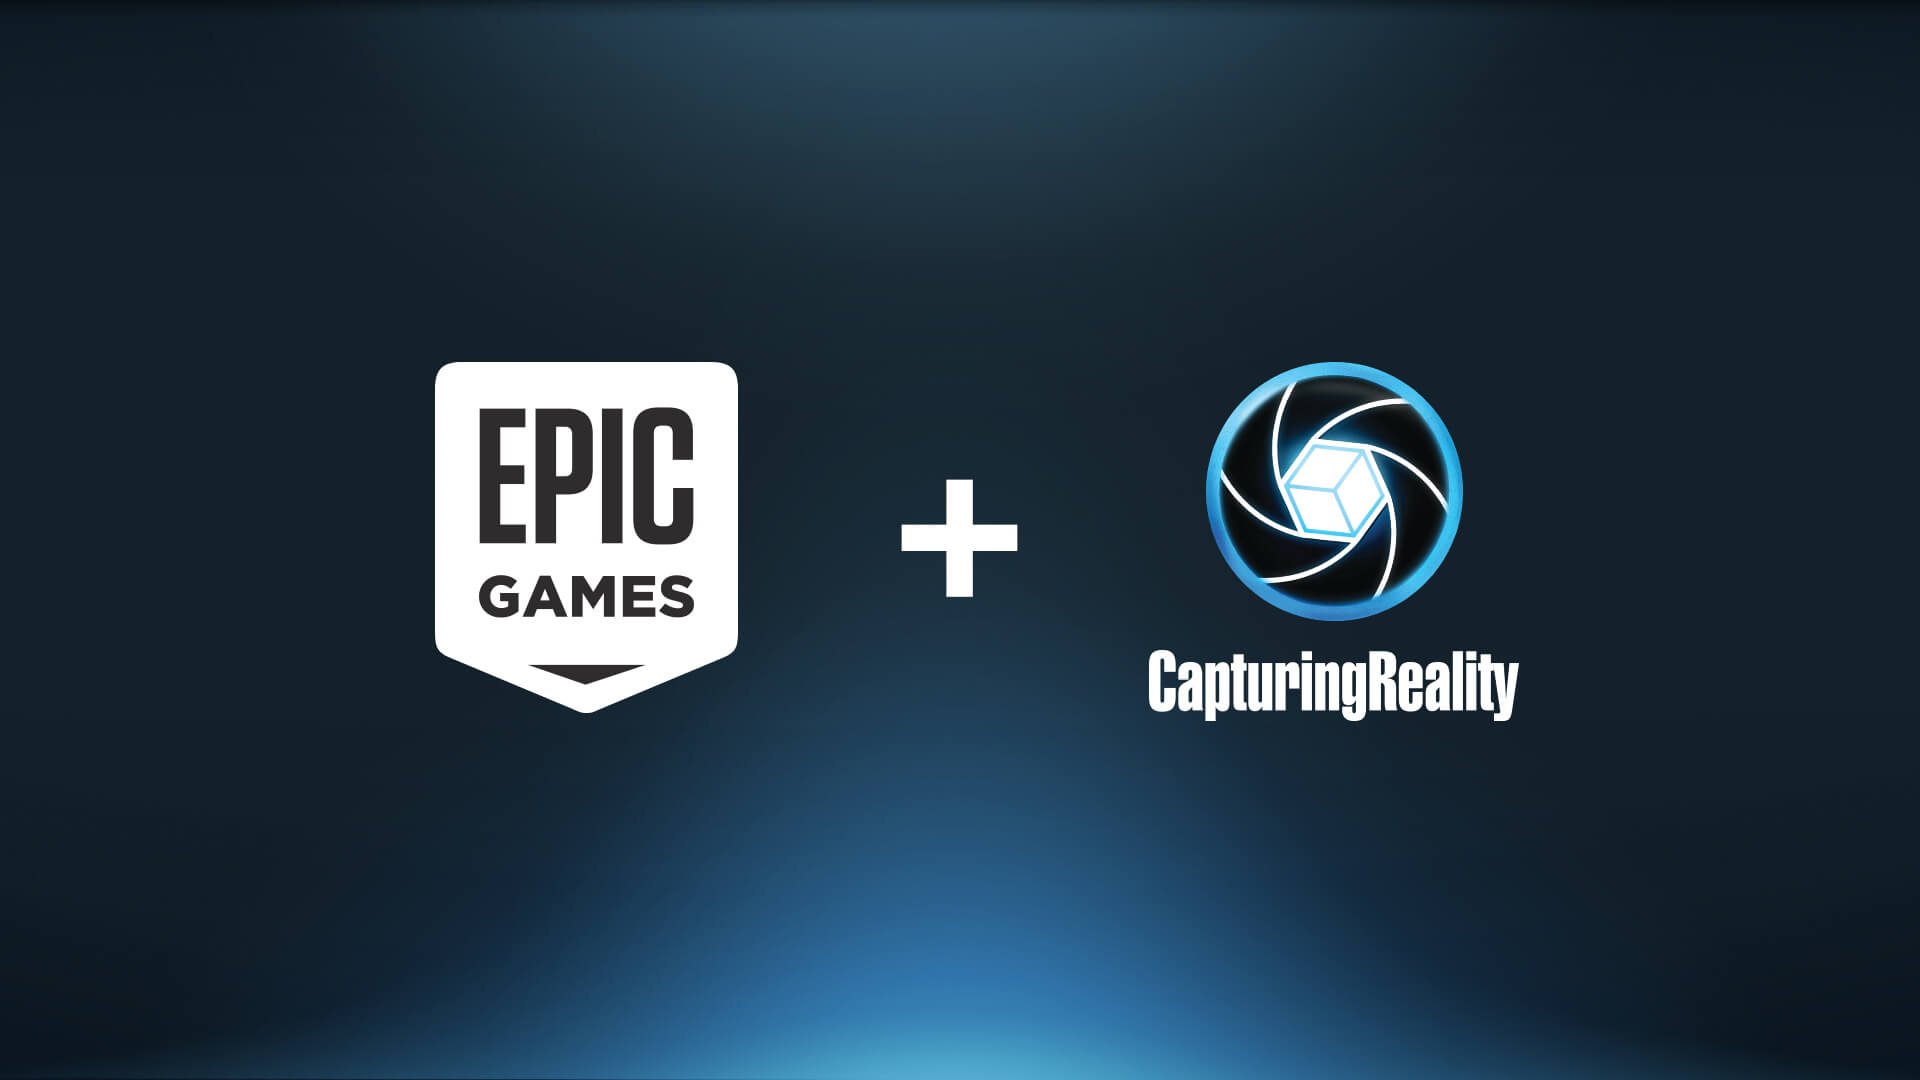 Epic Games compró Capturing Reality, una empresa que mejorará el Unreal Engine